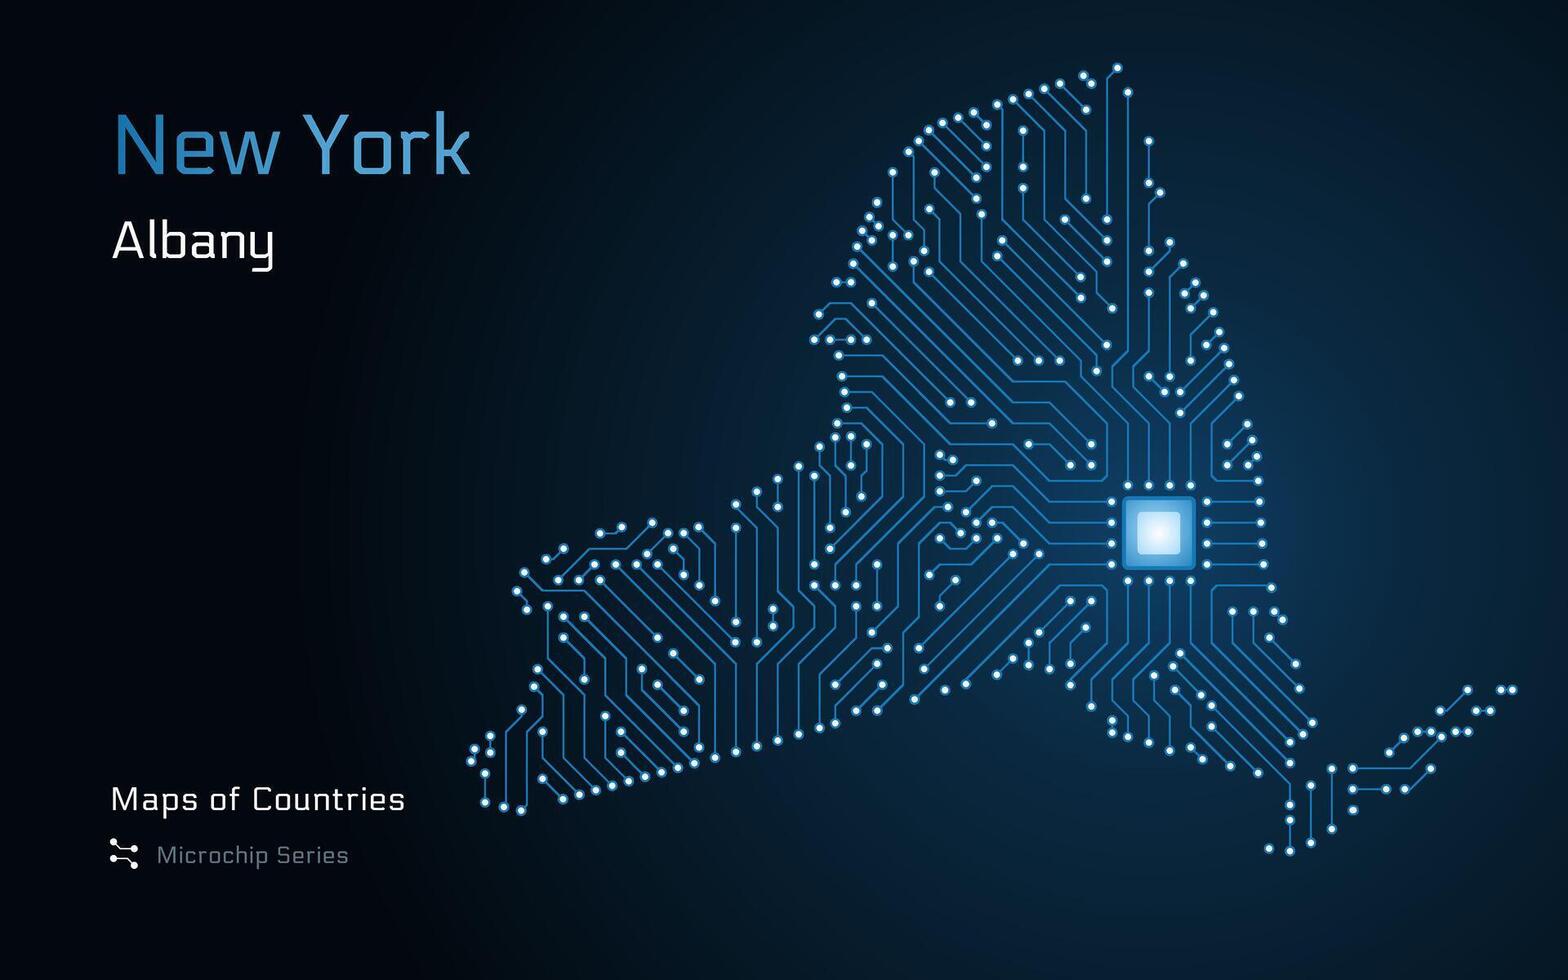 nieuw york staat kaart met een hoofdstad van albany getoond in een microchip patroon vector